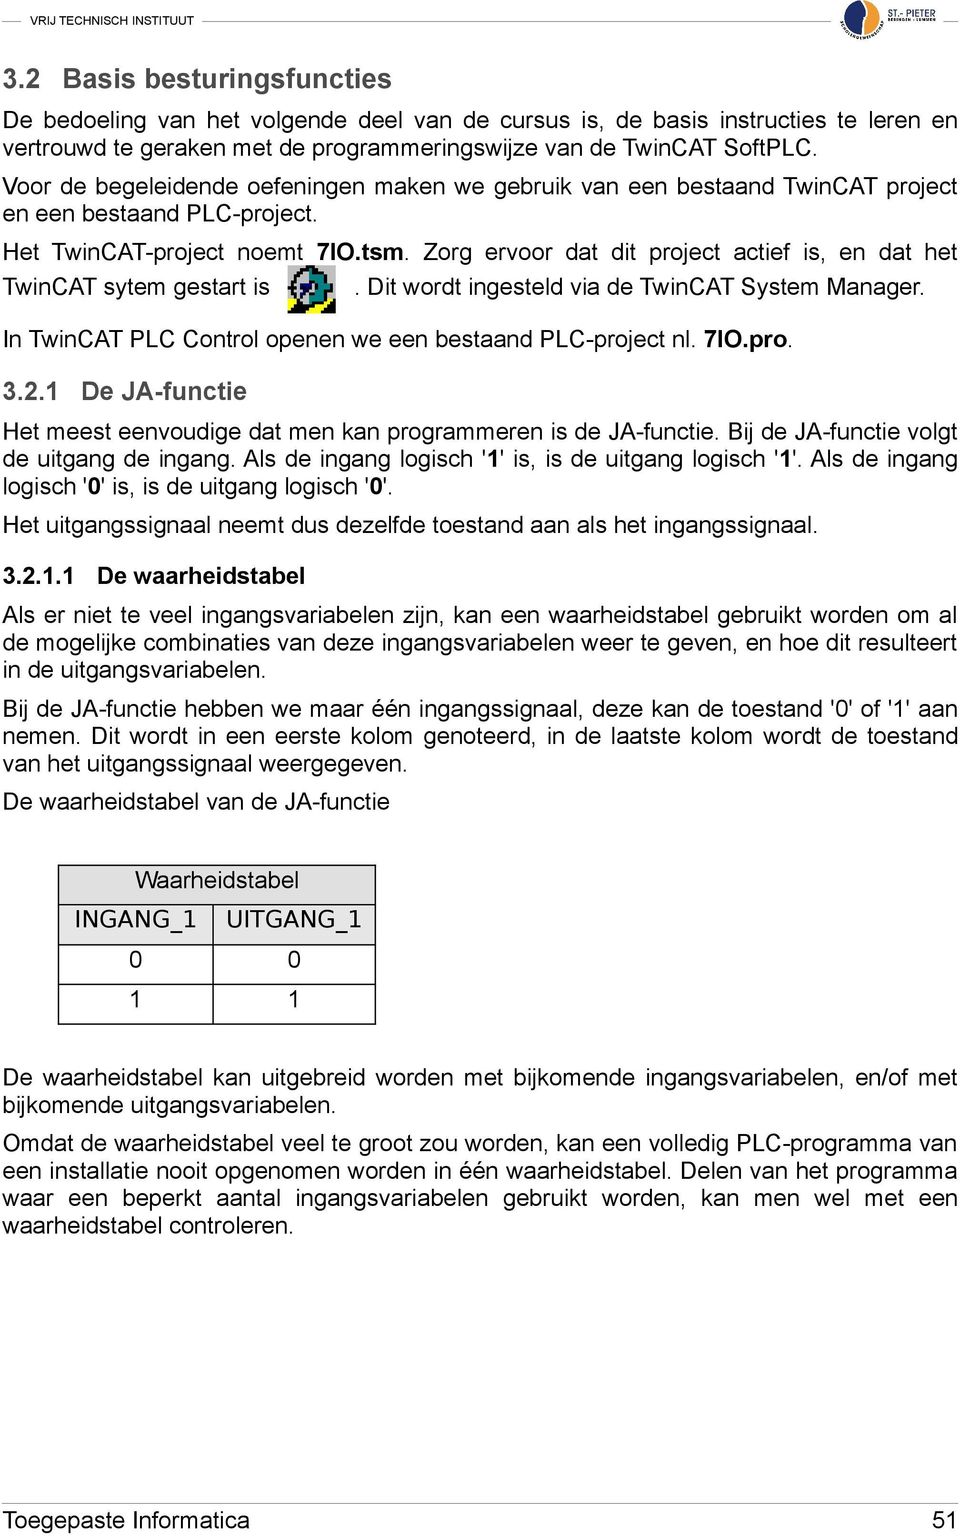 Zorg ervoor dat dit project actief is, en dat het TwinCAT sytem gestart is. Dit wordt ingesteld via de TwinCAT System Manager. In TwinCAT PLC Control openen we een bestaand PLC-project nl. 7IO.pro. 3.